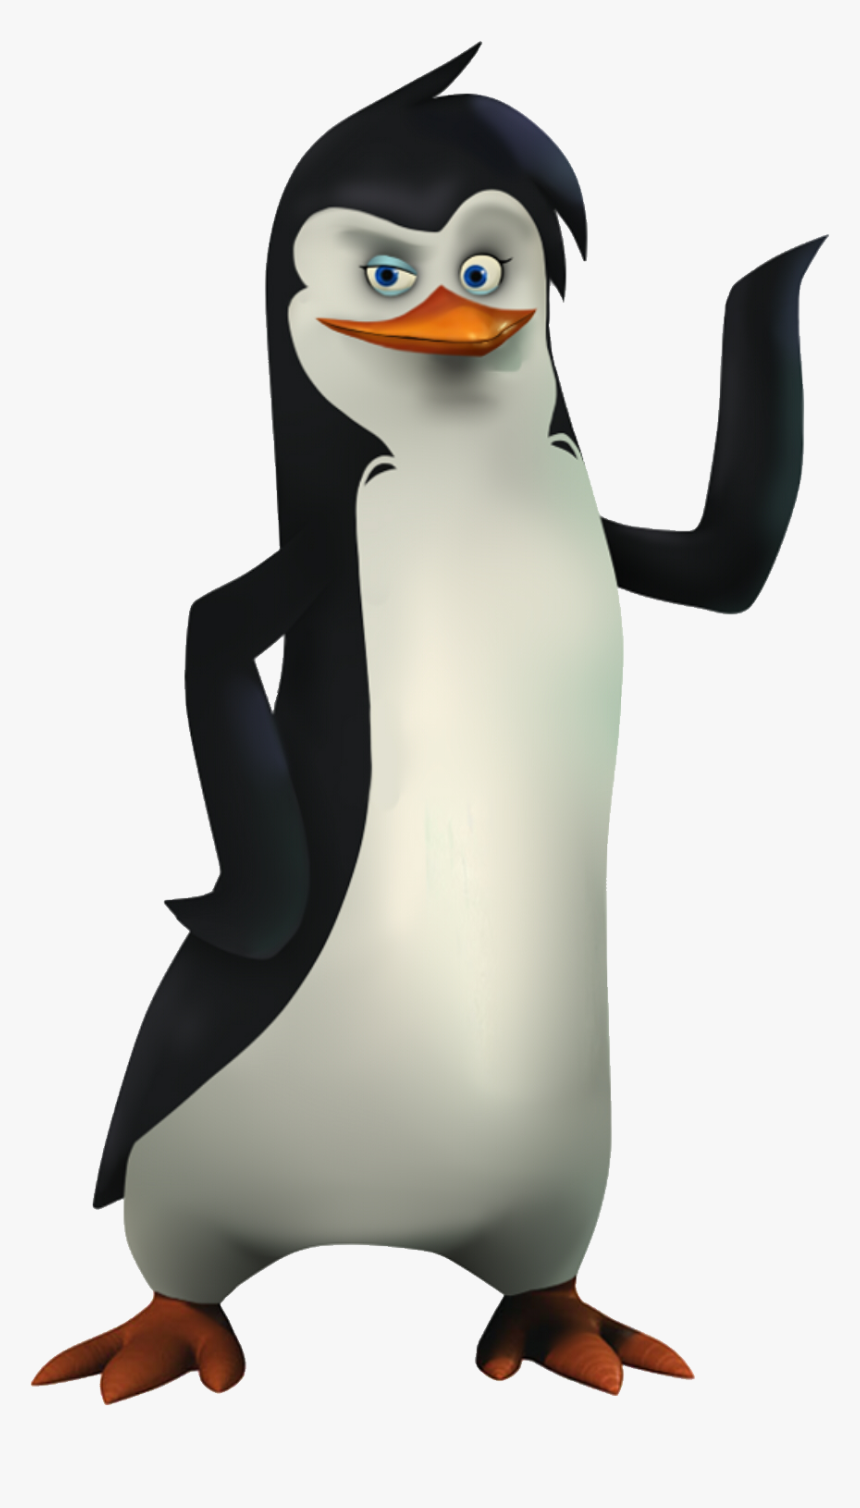 Penguins Of Madagascar - Madagascar Penguin, HD Png Download, Free Download